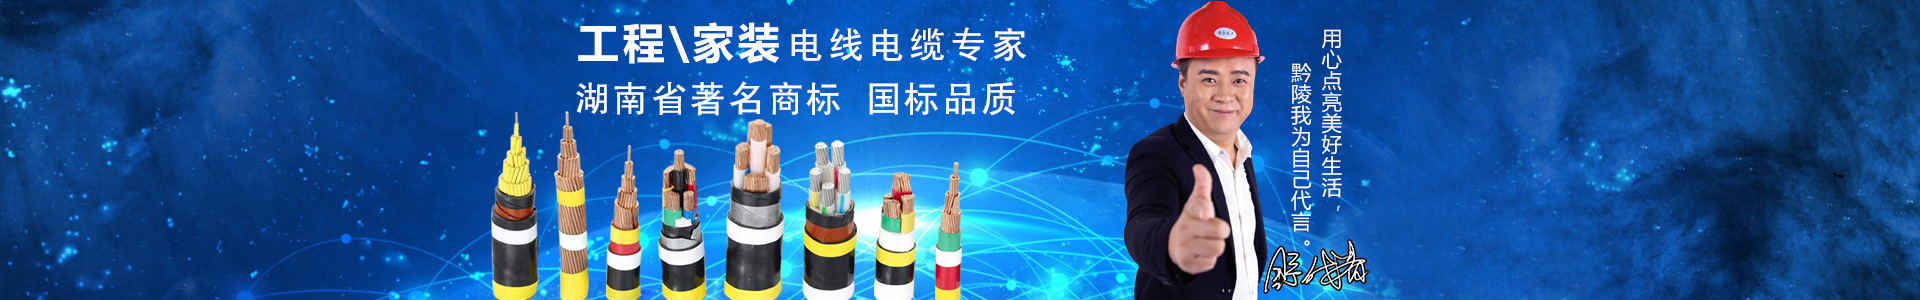 湖南黔陵電線電纜科技有限公司_懷化電線電纜生產|開關出售|插座出售